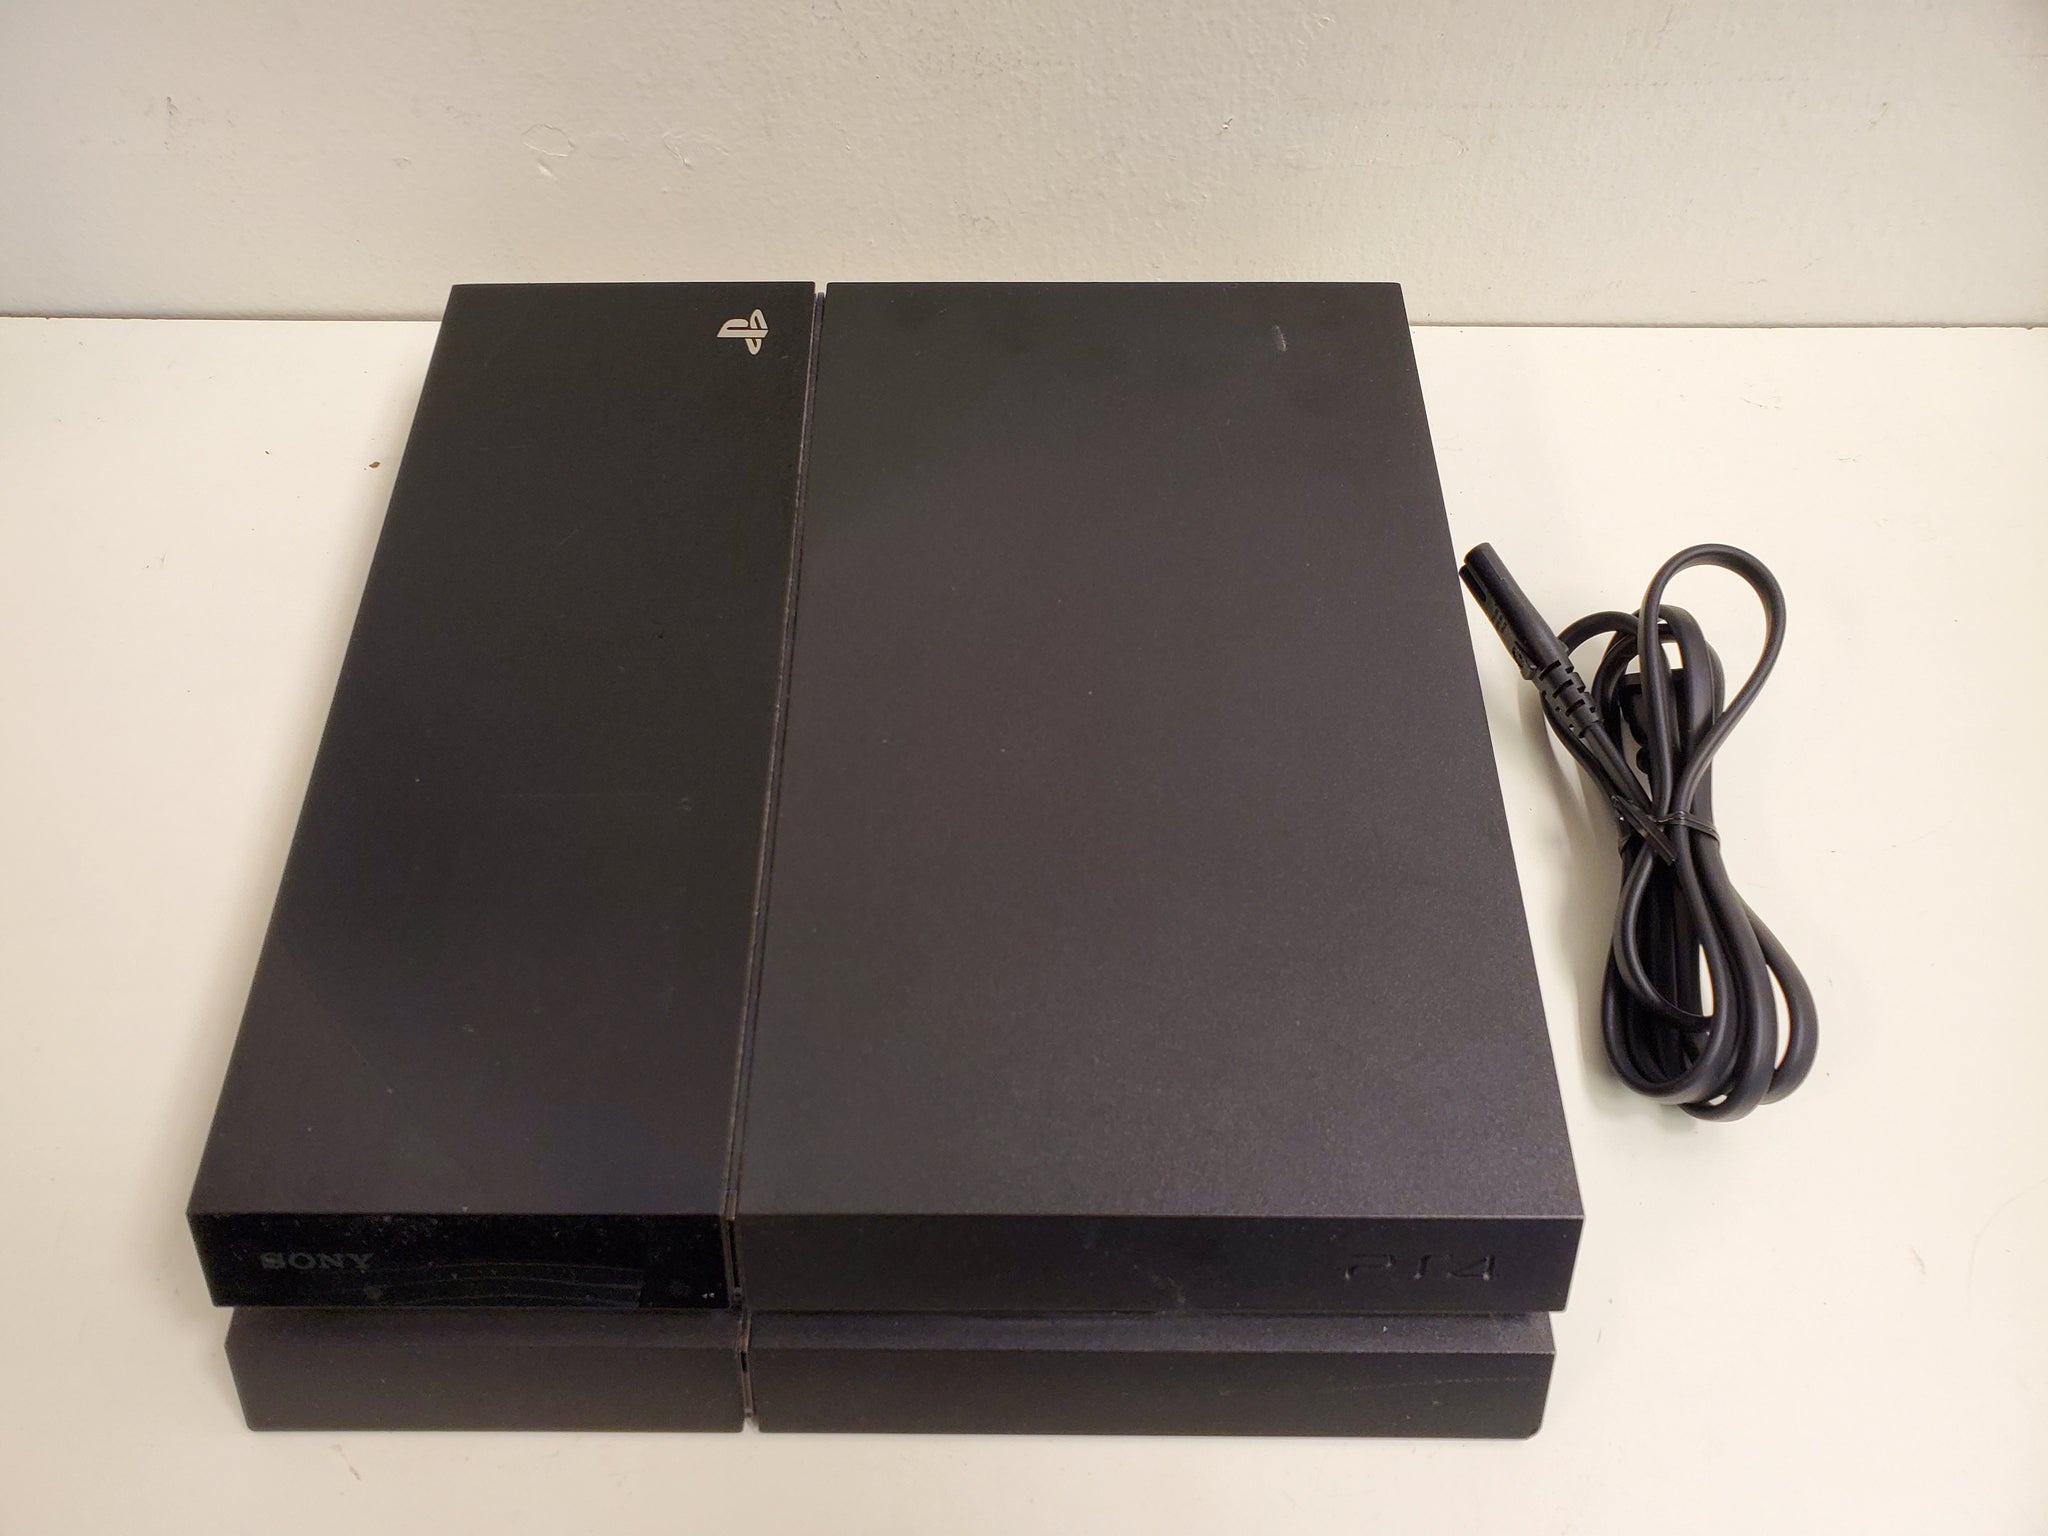 Sony PlayStation 4 1TB Slim Gaming Console